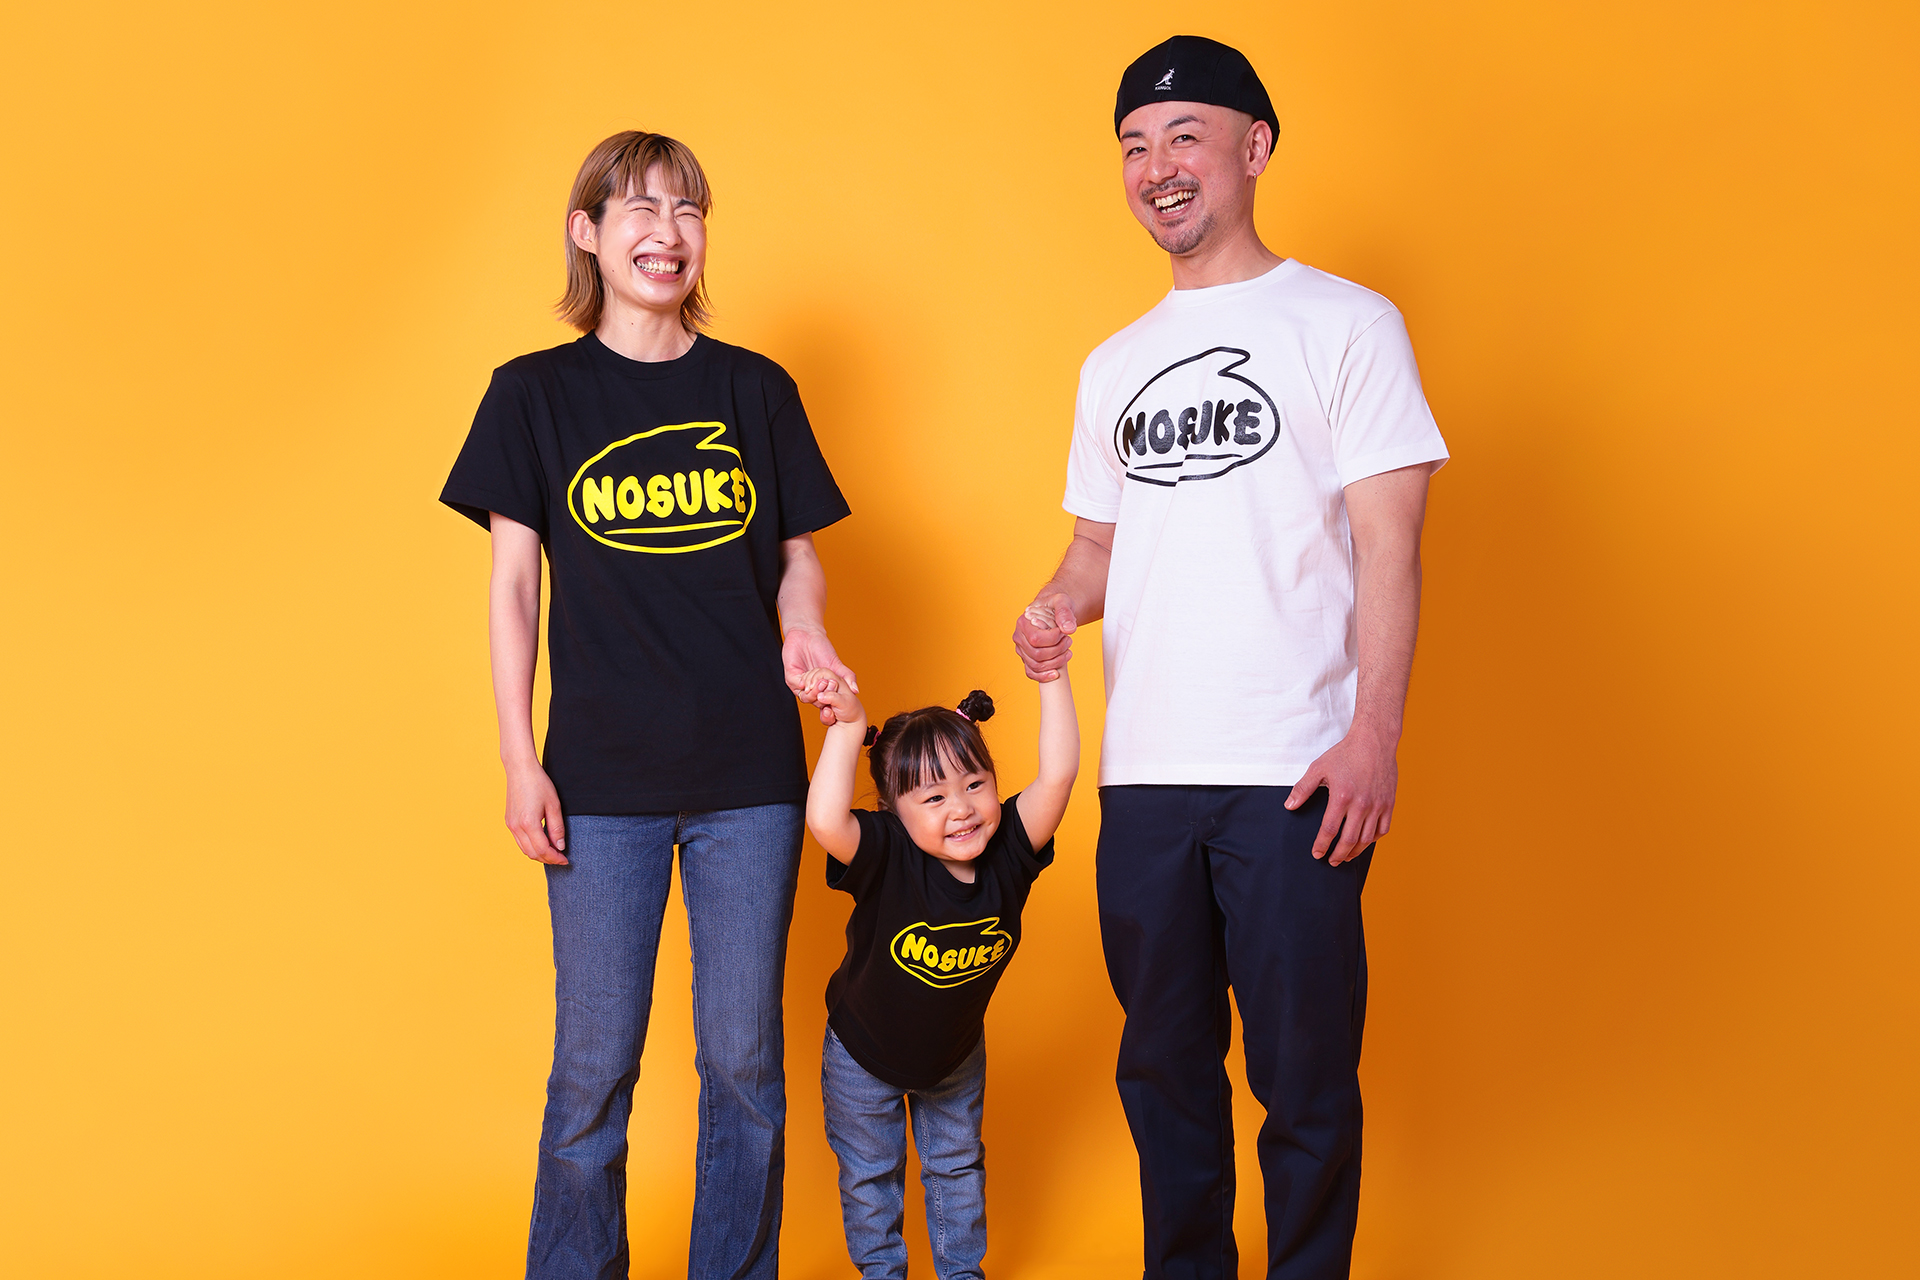 【ポップ&かわいい】NOSUKEオリジナルロゴ「6NOSUKE」Tシャツ発売中!!